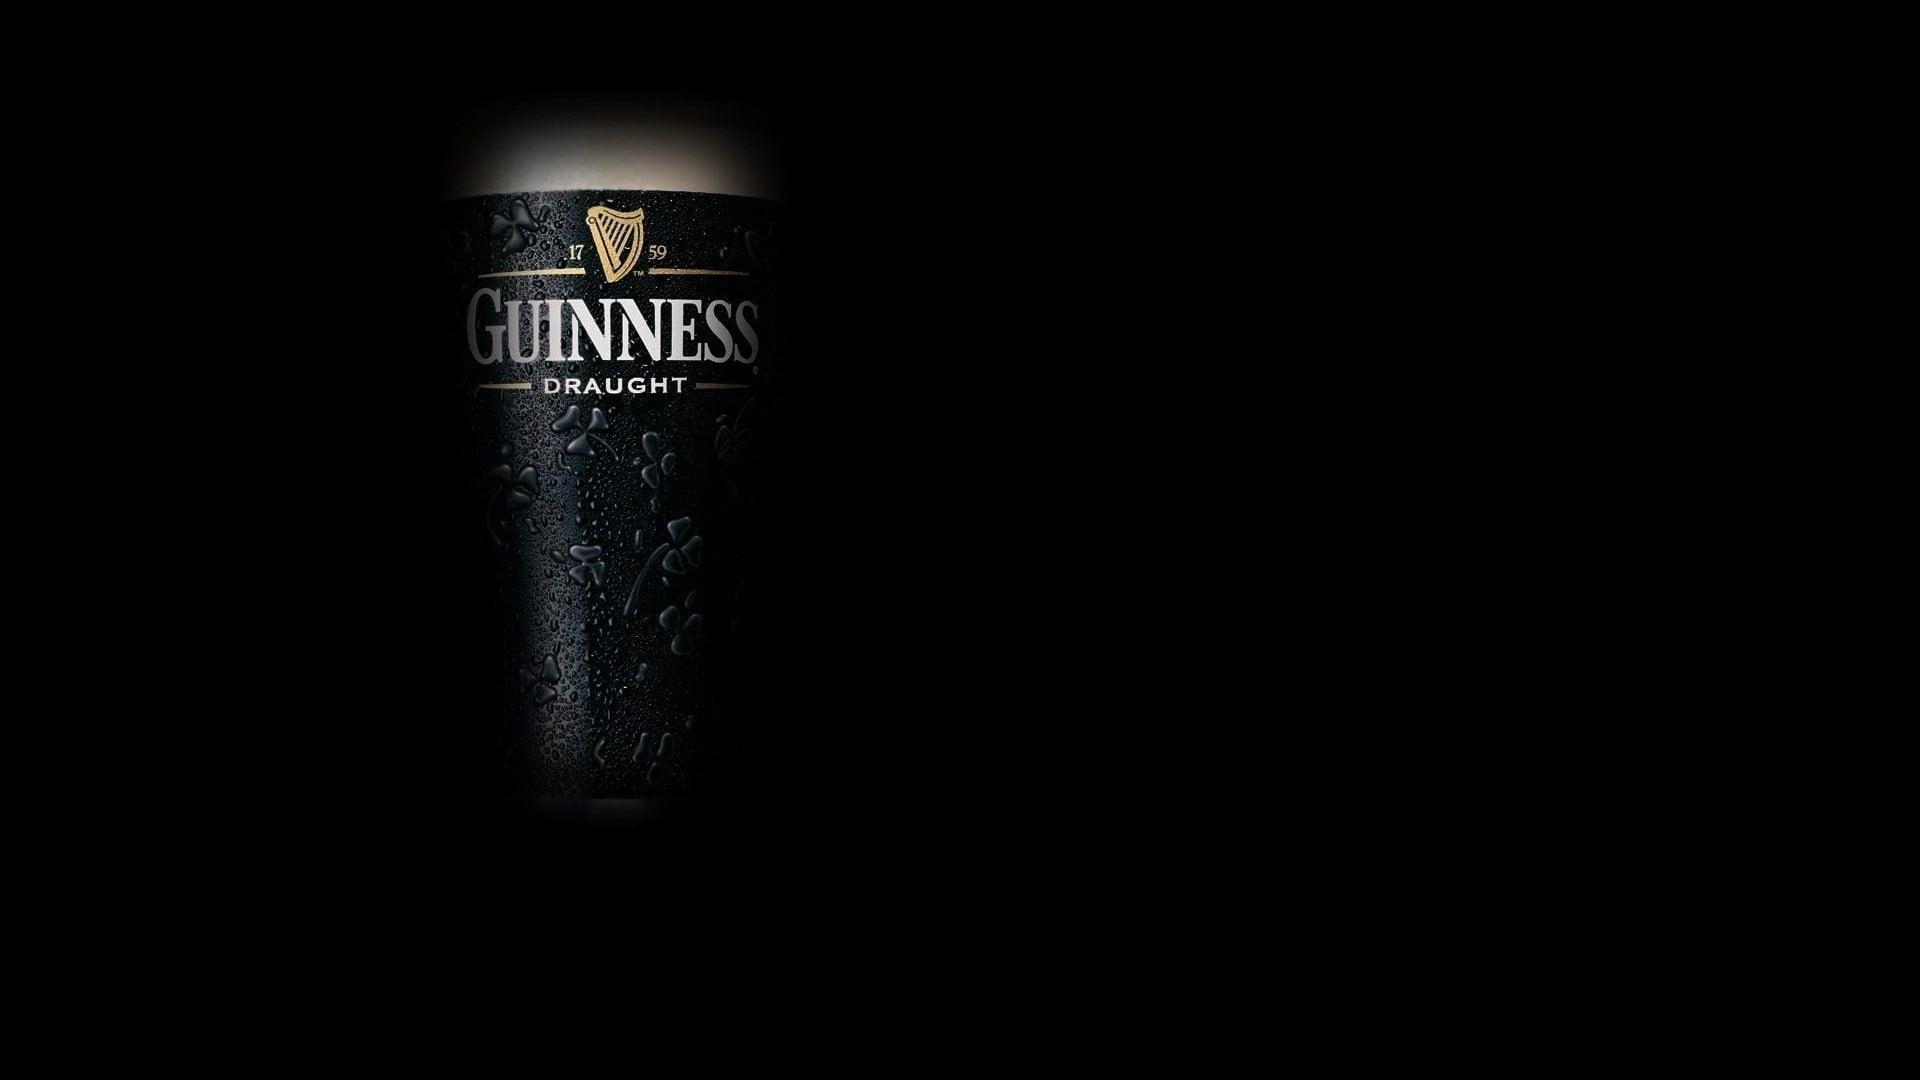 Guinness Draught liquor bottle